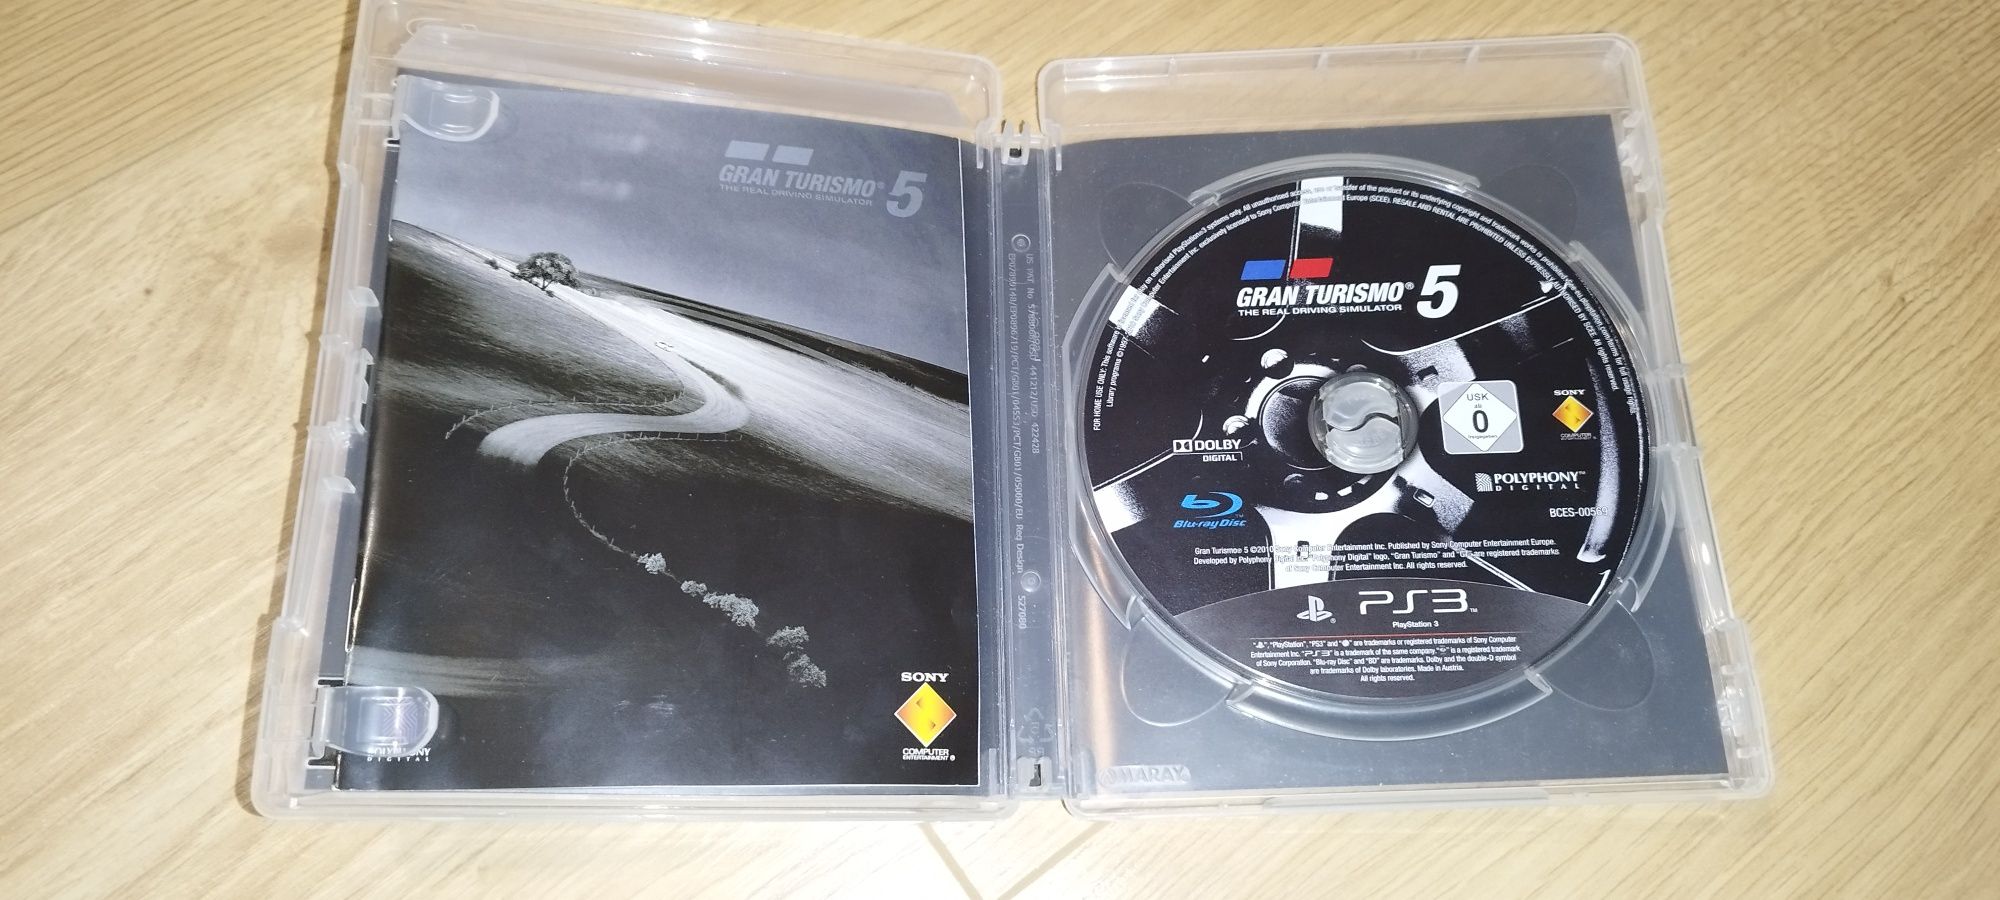 Gran Turismo 5 PL ps3.